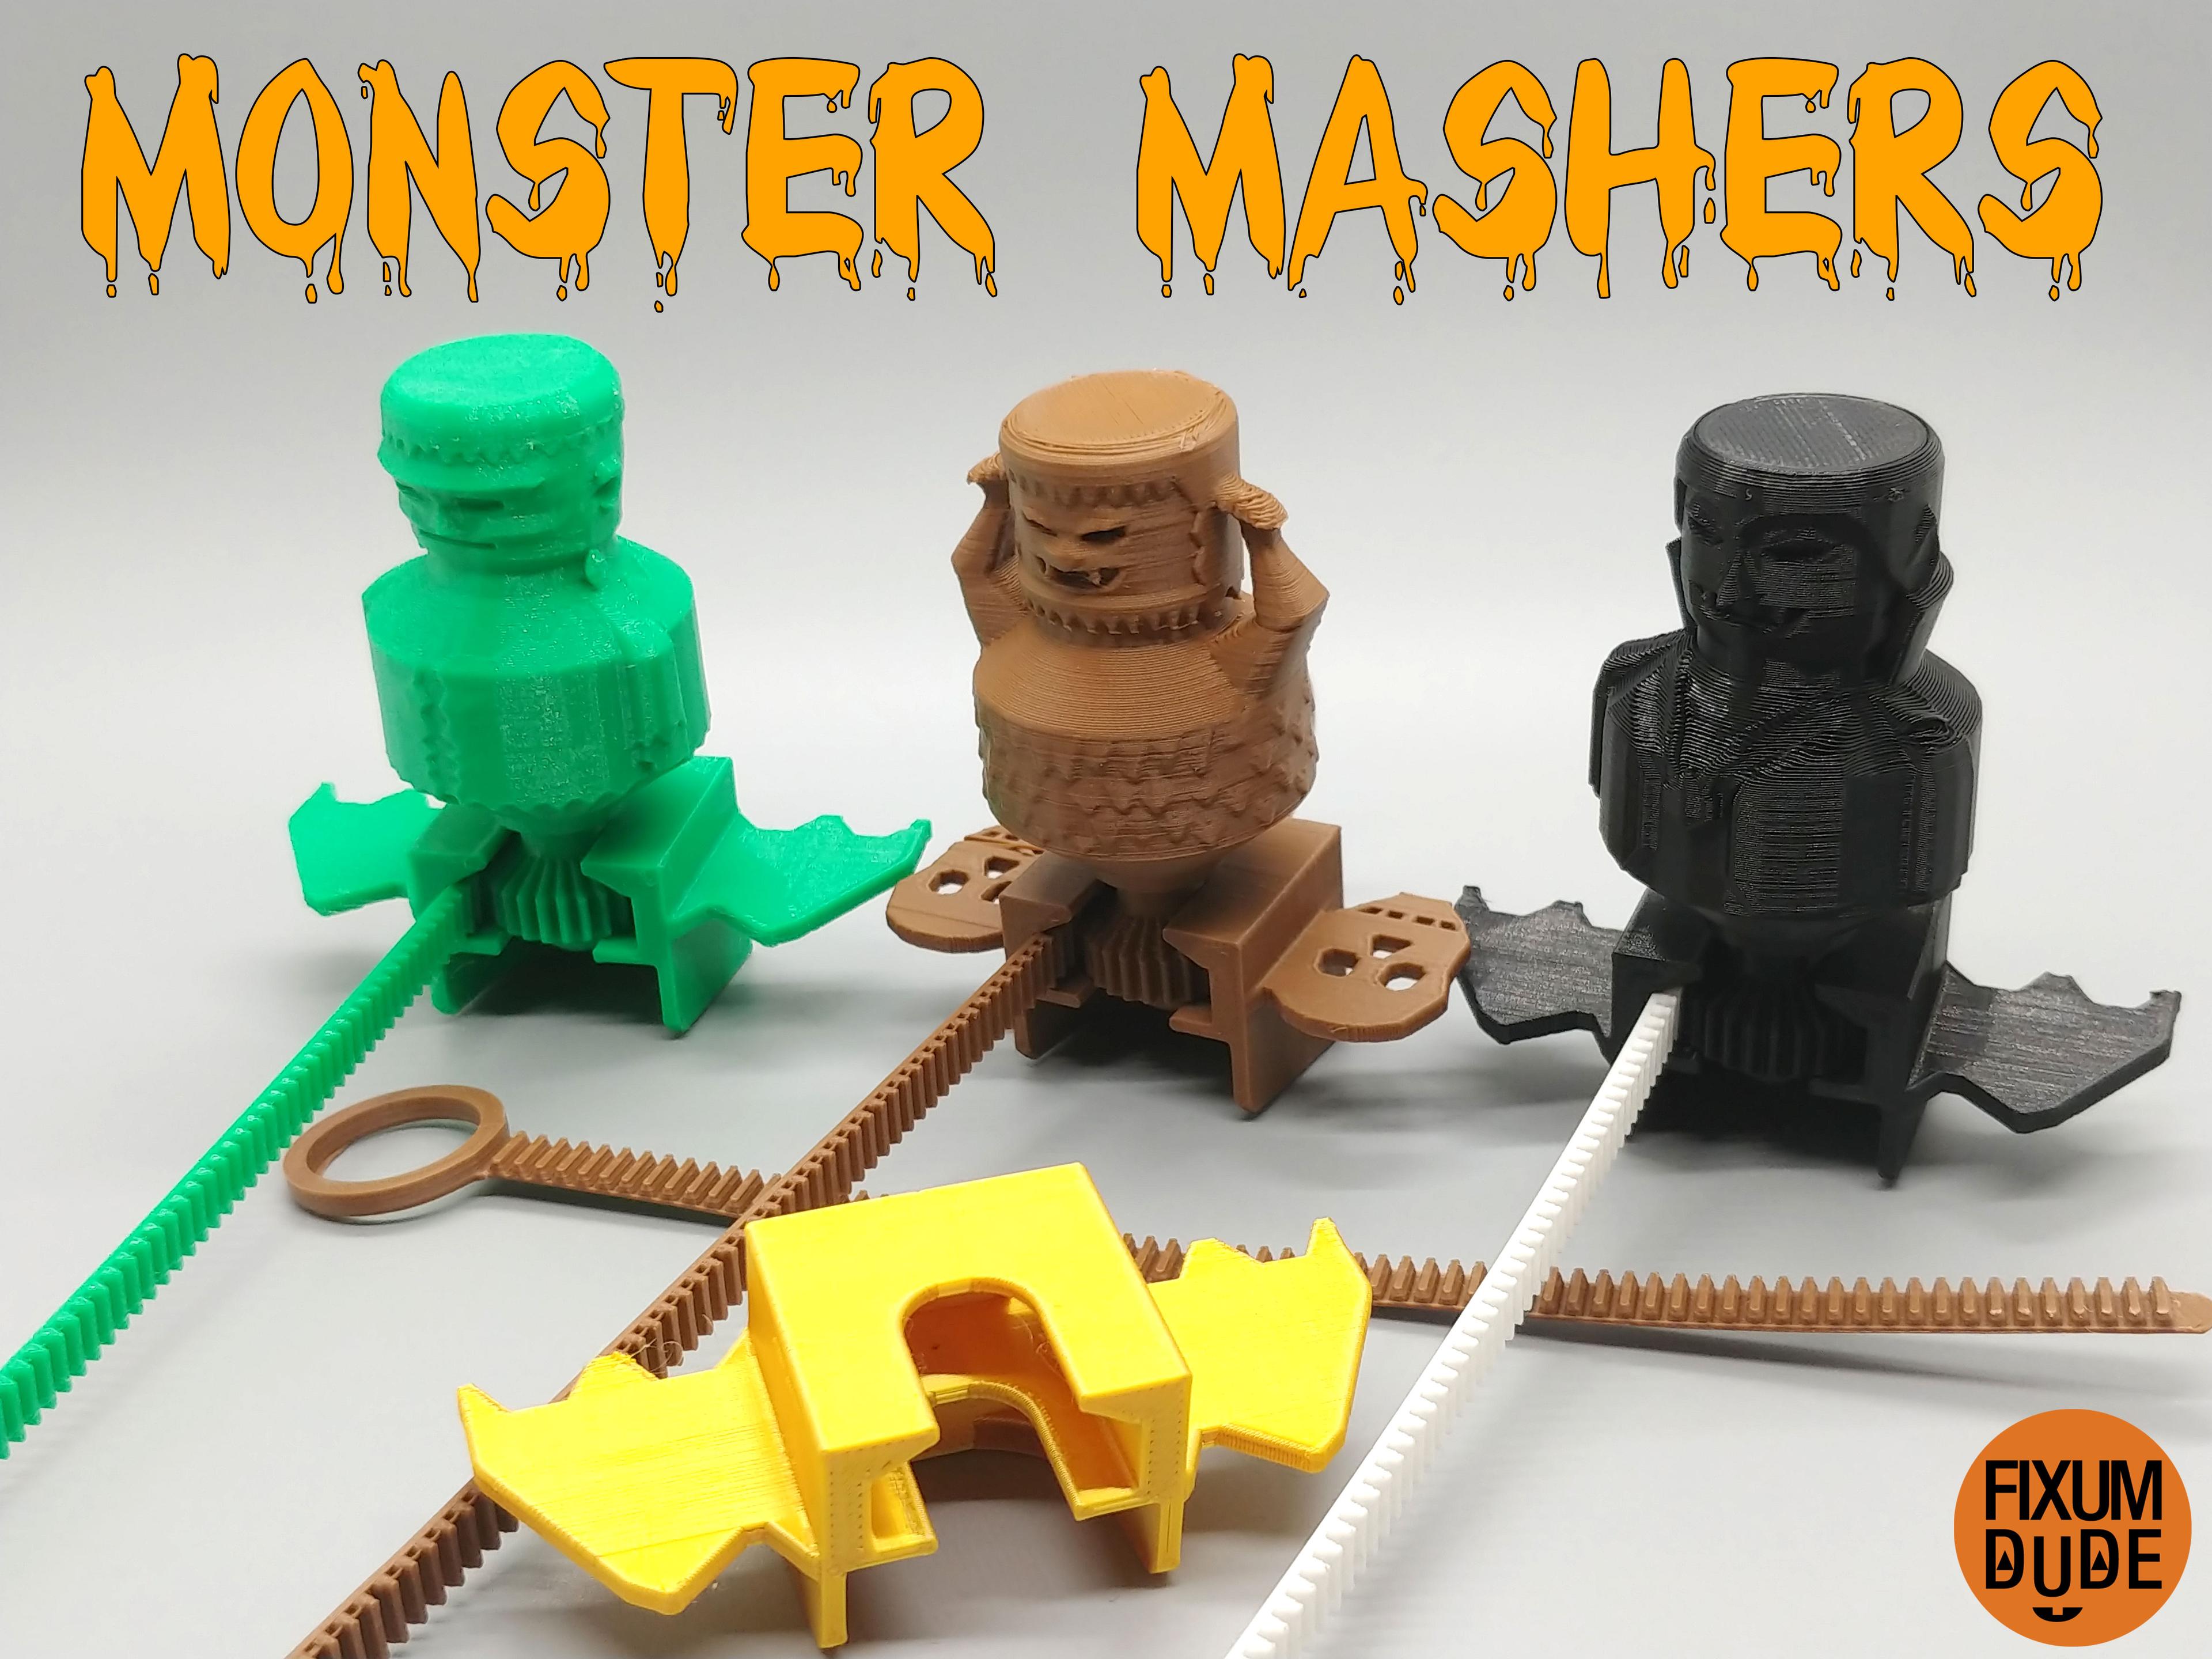 Monster Mashers Spinning Battle Tops 3d model